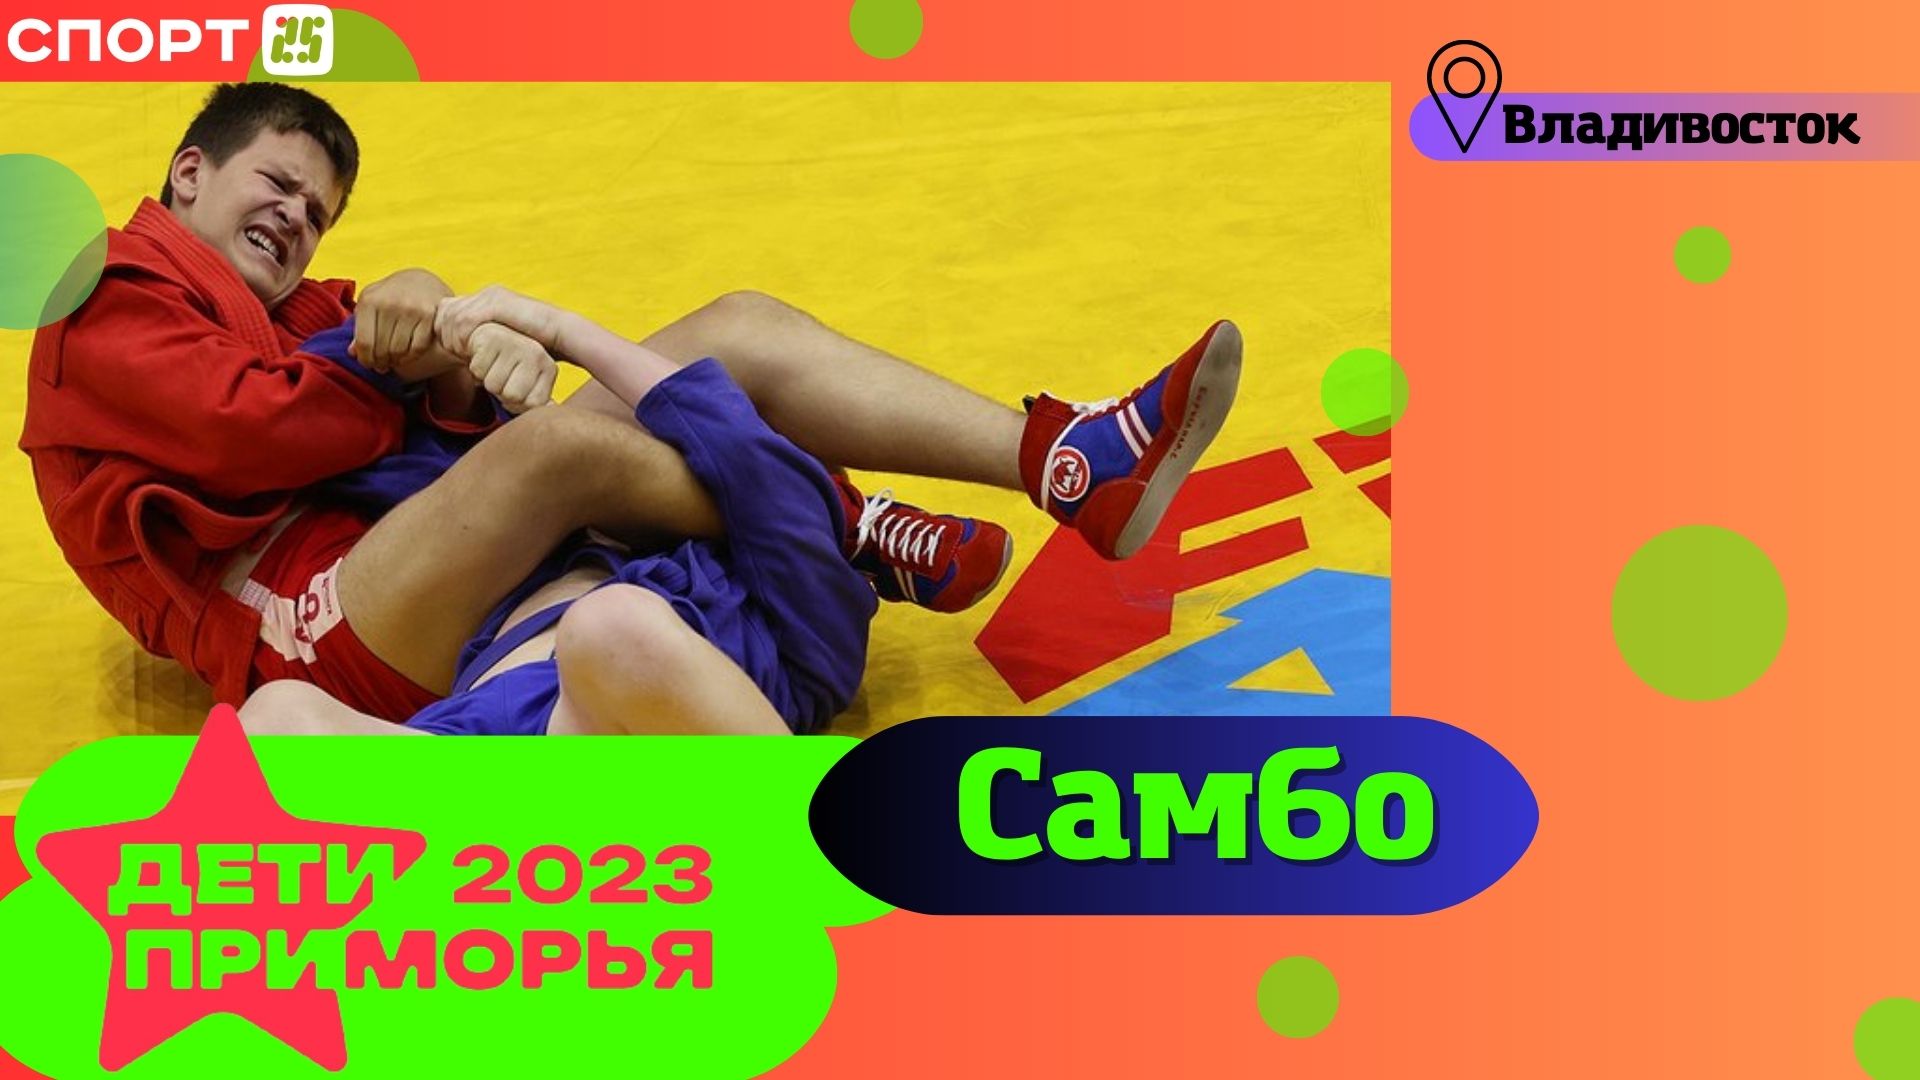 САМБО на Играх «Дети Приморья» 2023 во Владивостоке 5 июля / #ДетиПриморья